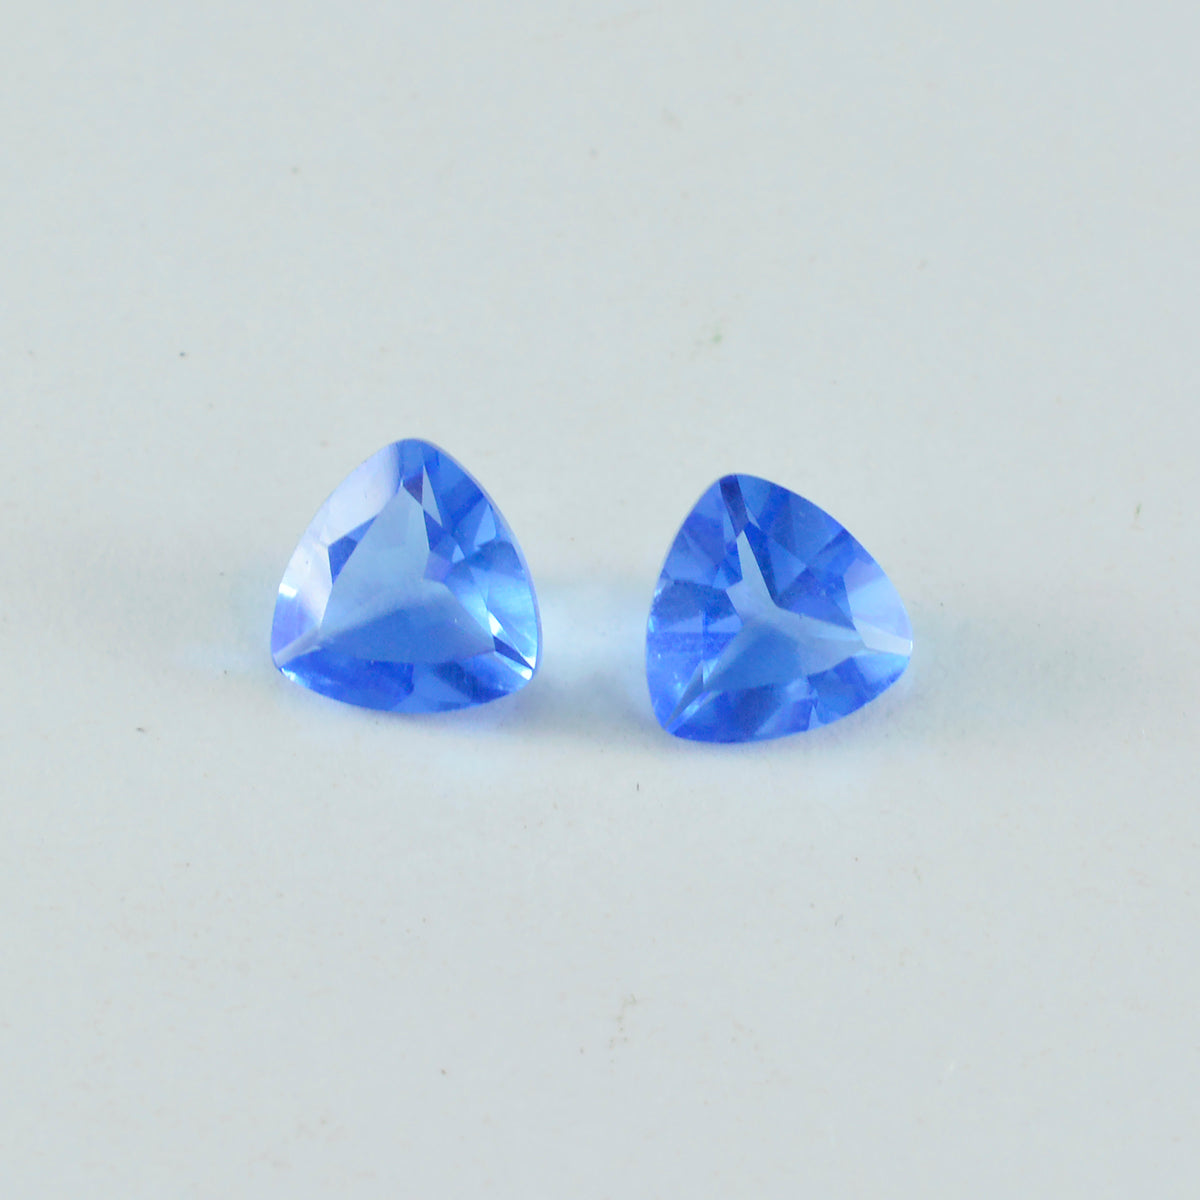 riyogems 1 шт. синий сапфир cz ограненный 13x13 мм форма триллион удивительного качества свободный драгоценный камень